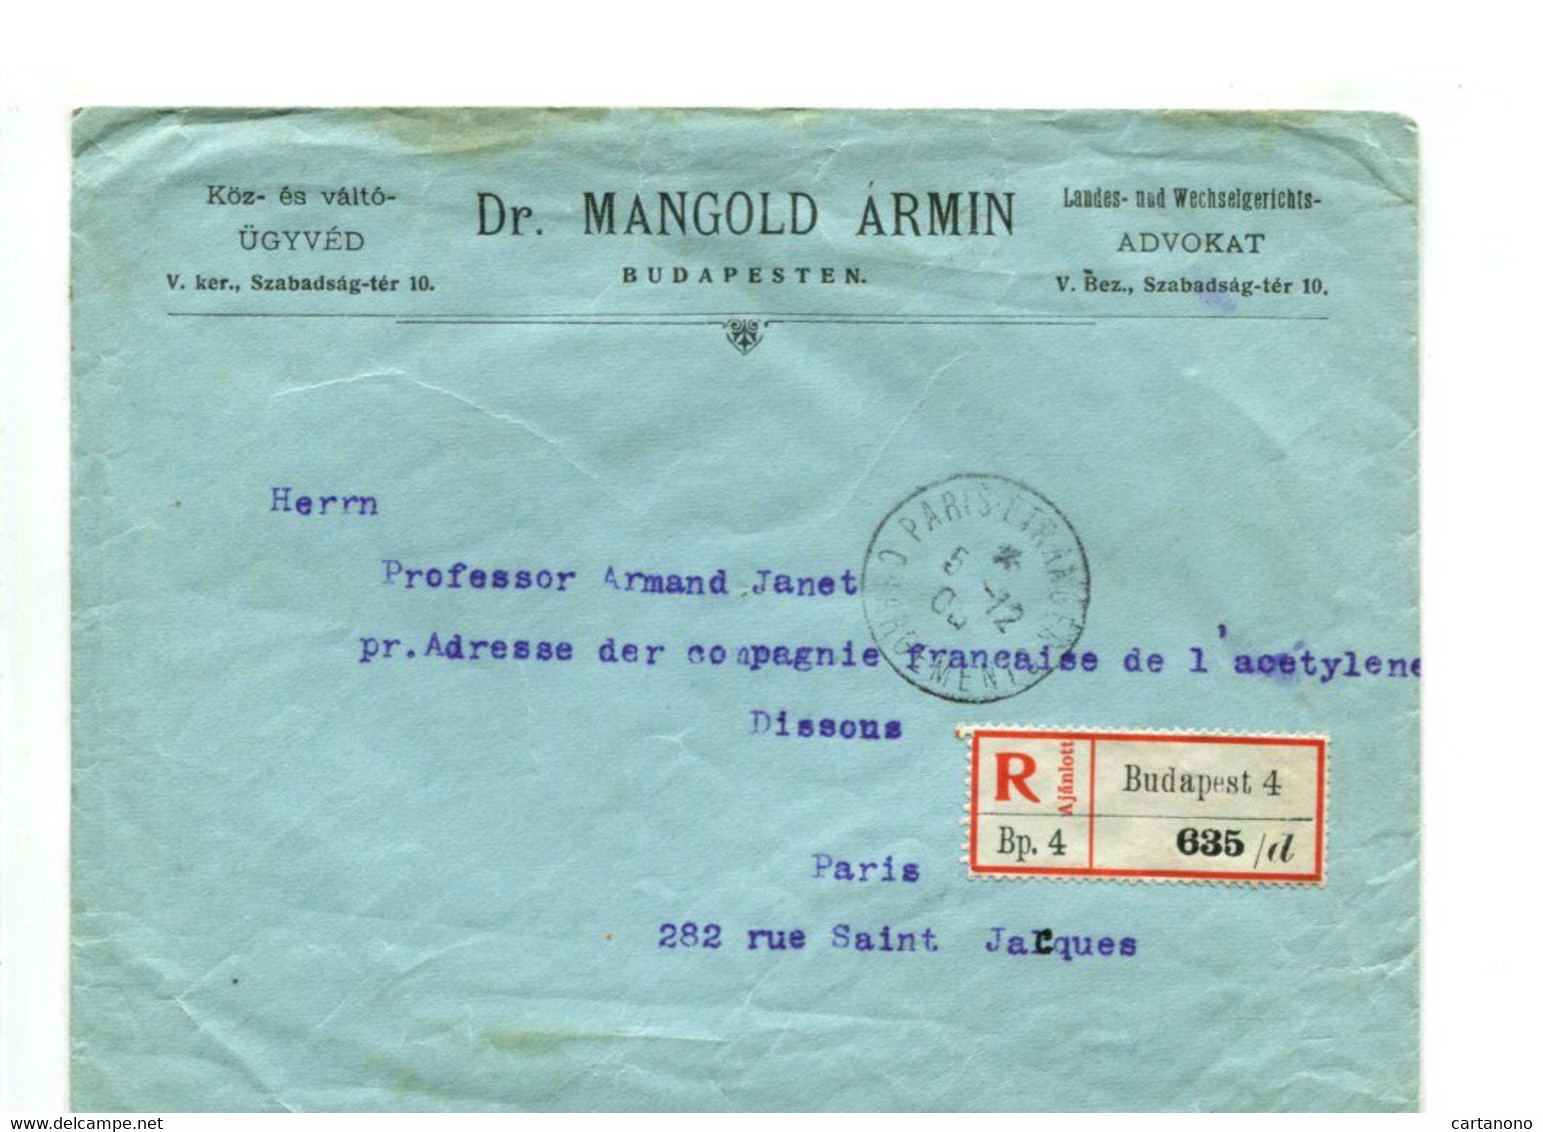 HONGRIE 1906 - Affr. Sur Lettre Recommandée Pour La France Entête Dr MANGOLD ARMIN (Avocat) - Poststempel (Marcophilie)